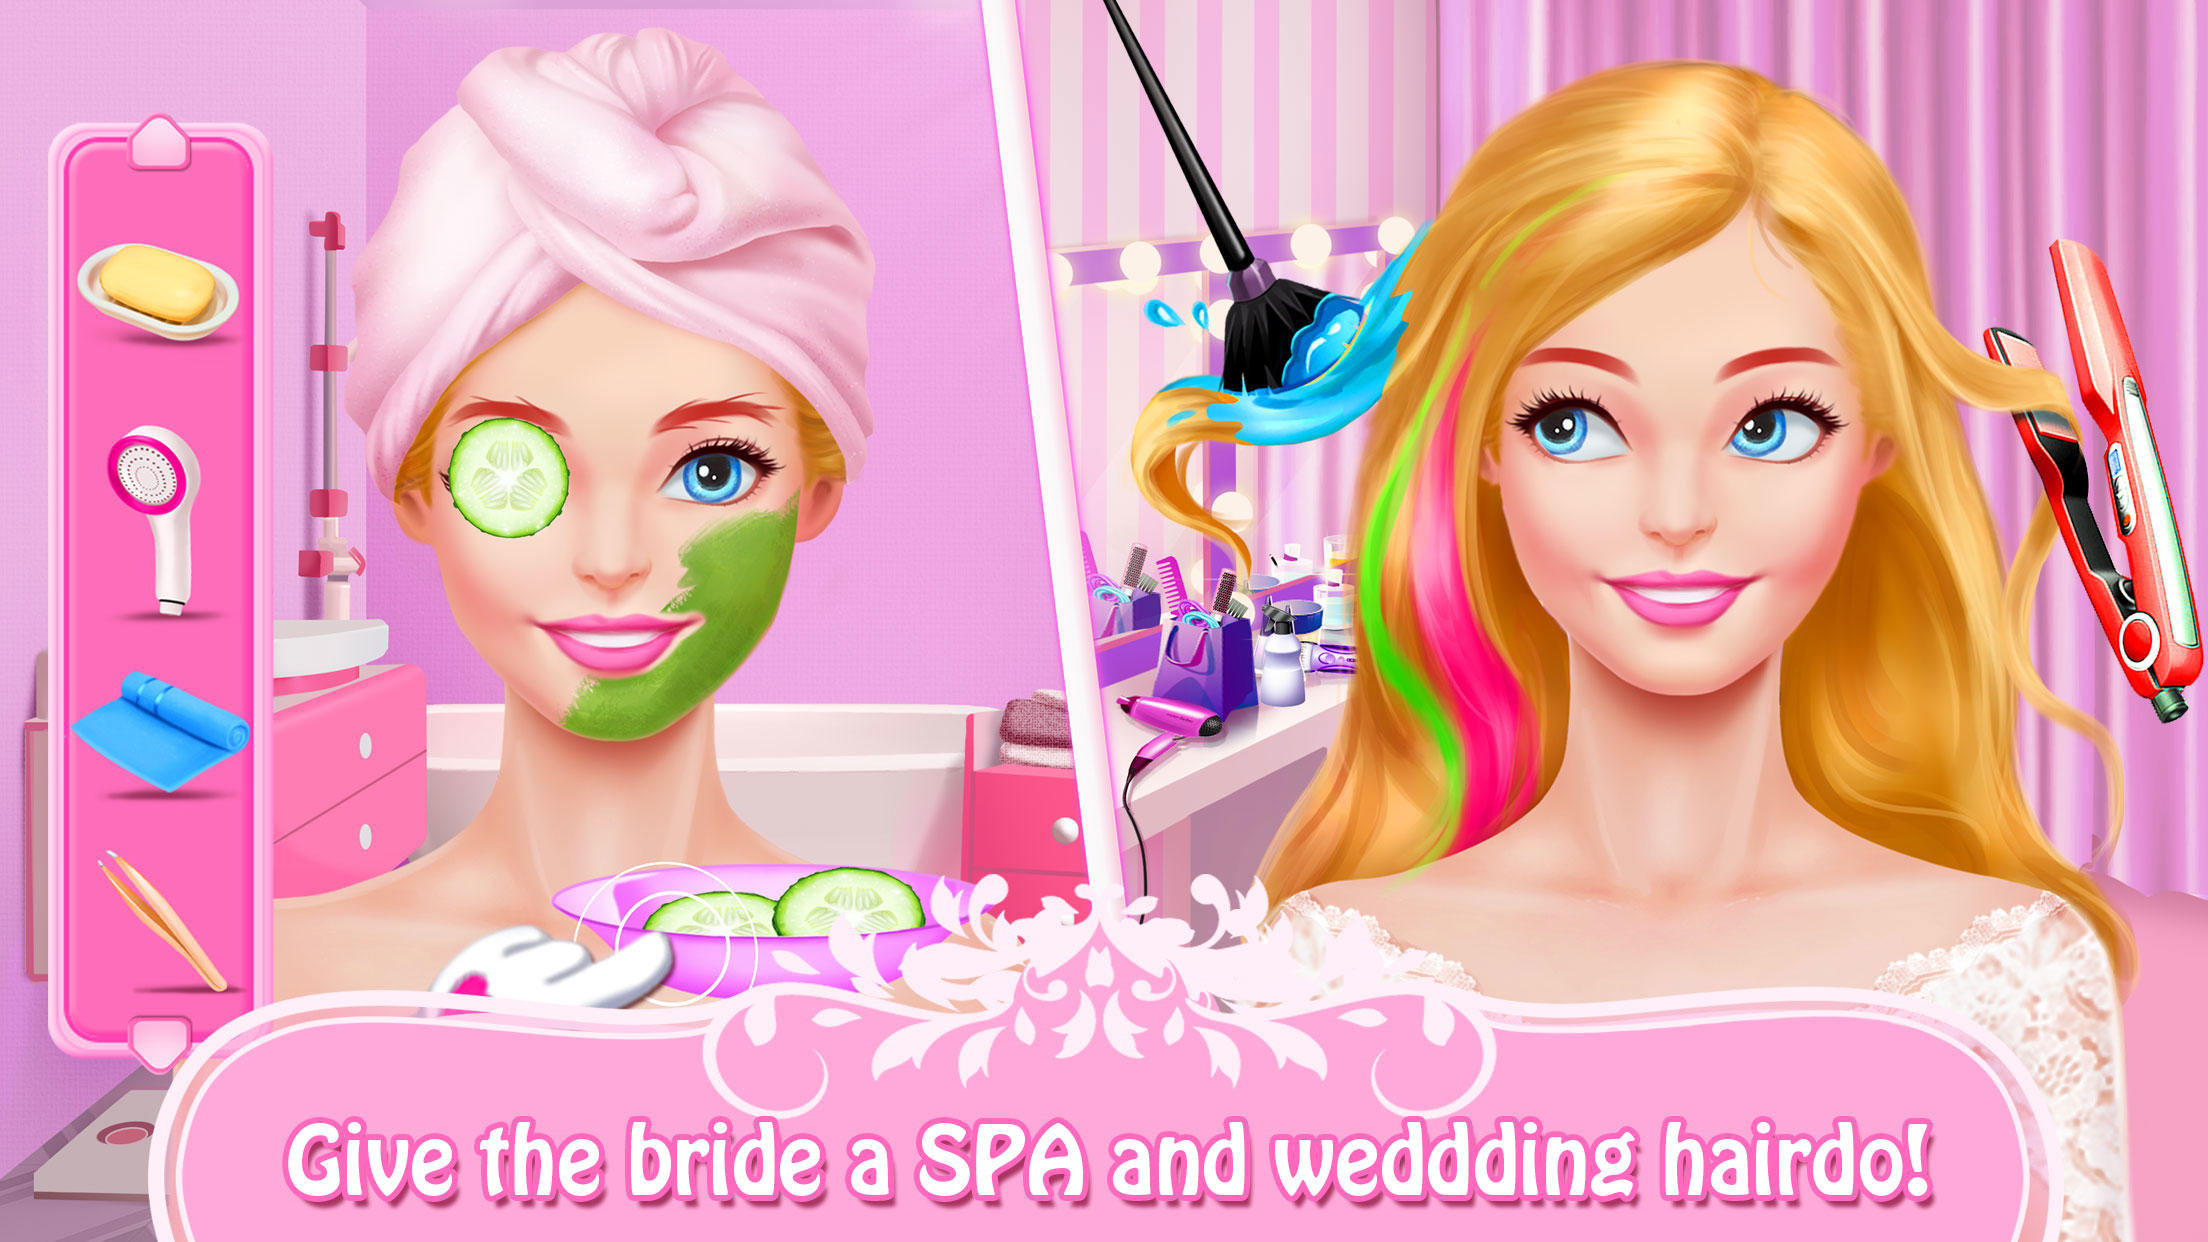 Screenshot 1 of Makeup Games: Wedding Artist 7.3